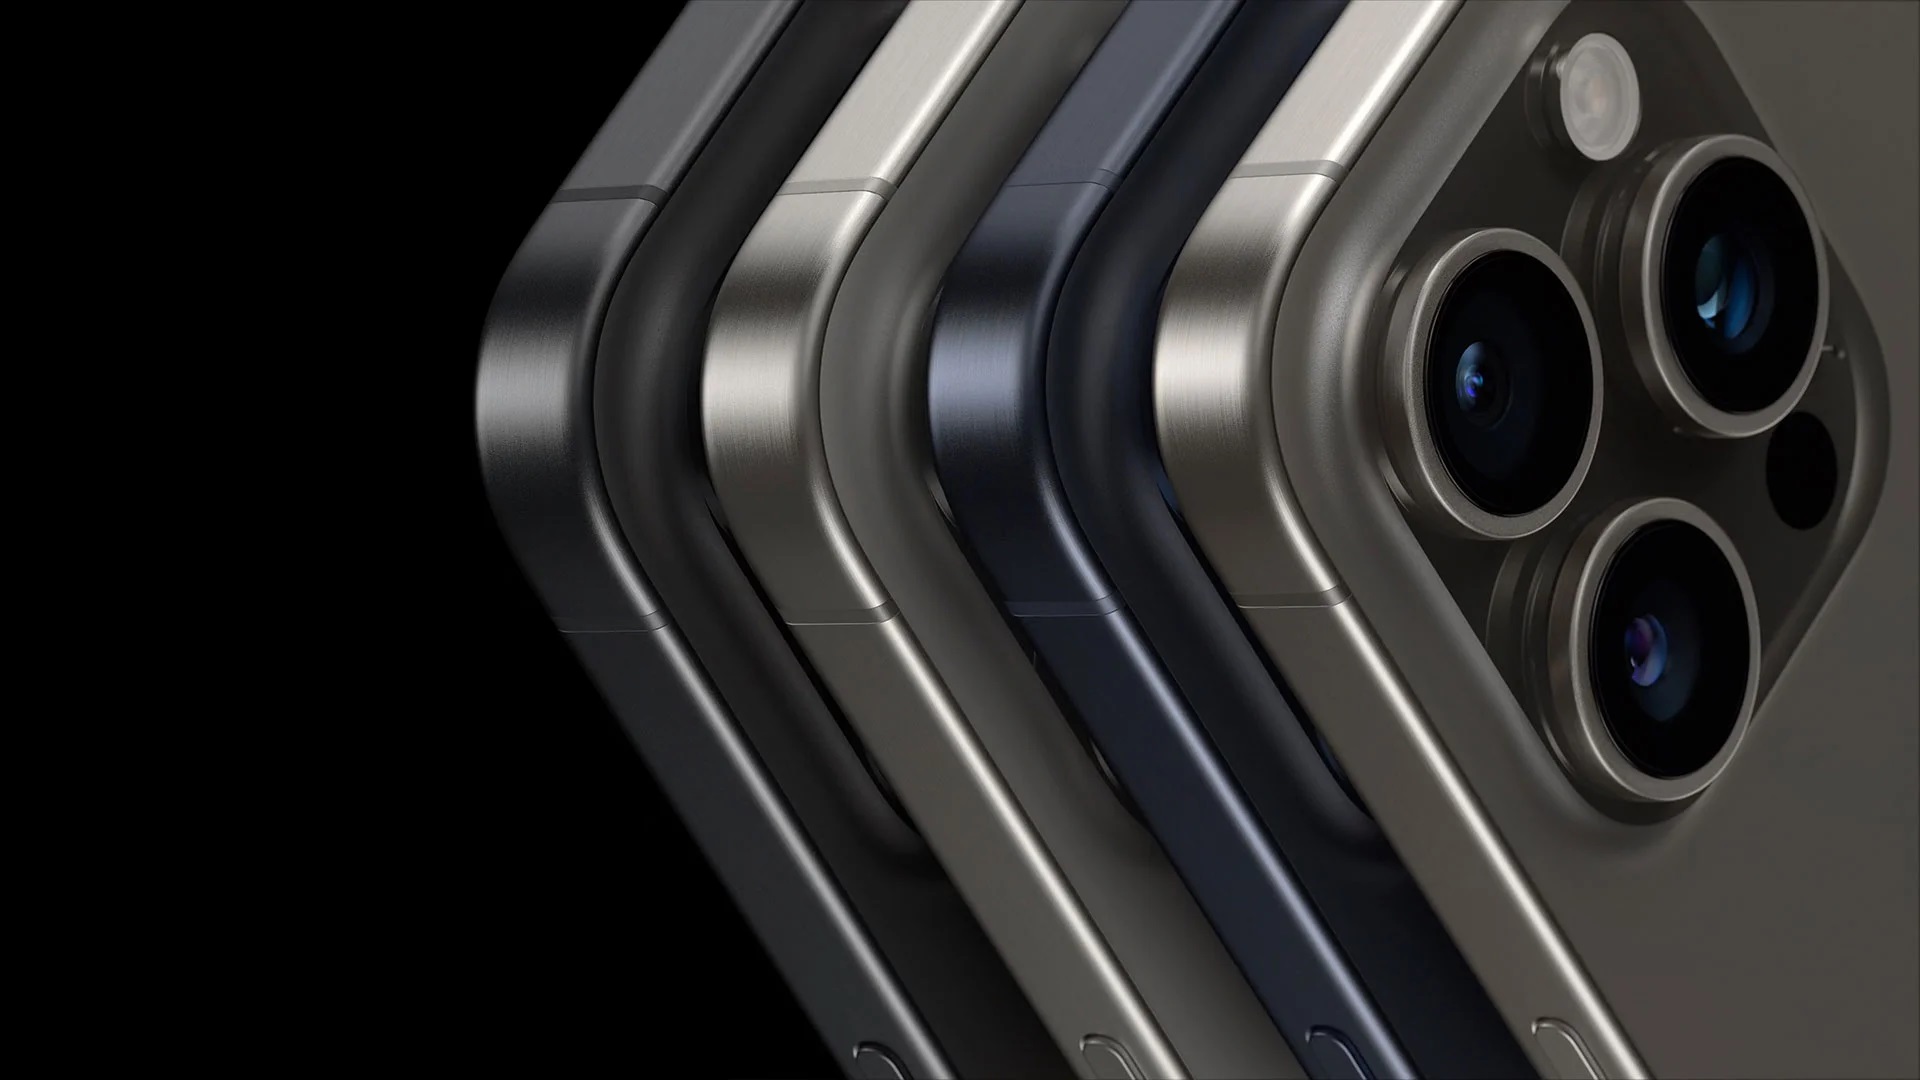 Gerücht: iPhone 16 Pro und iPhone 16 Pro Max Smartphones erhalten ein neues poliertes Titan-Finish